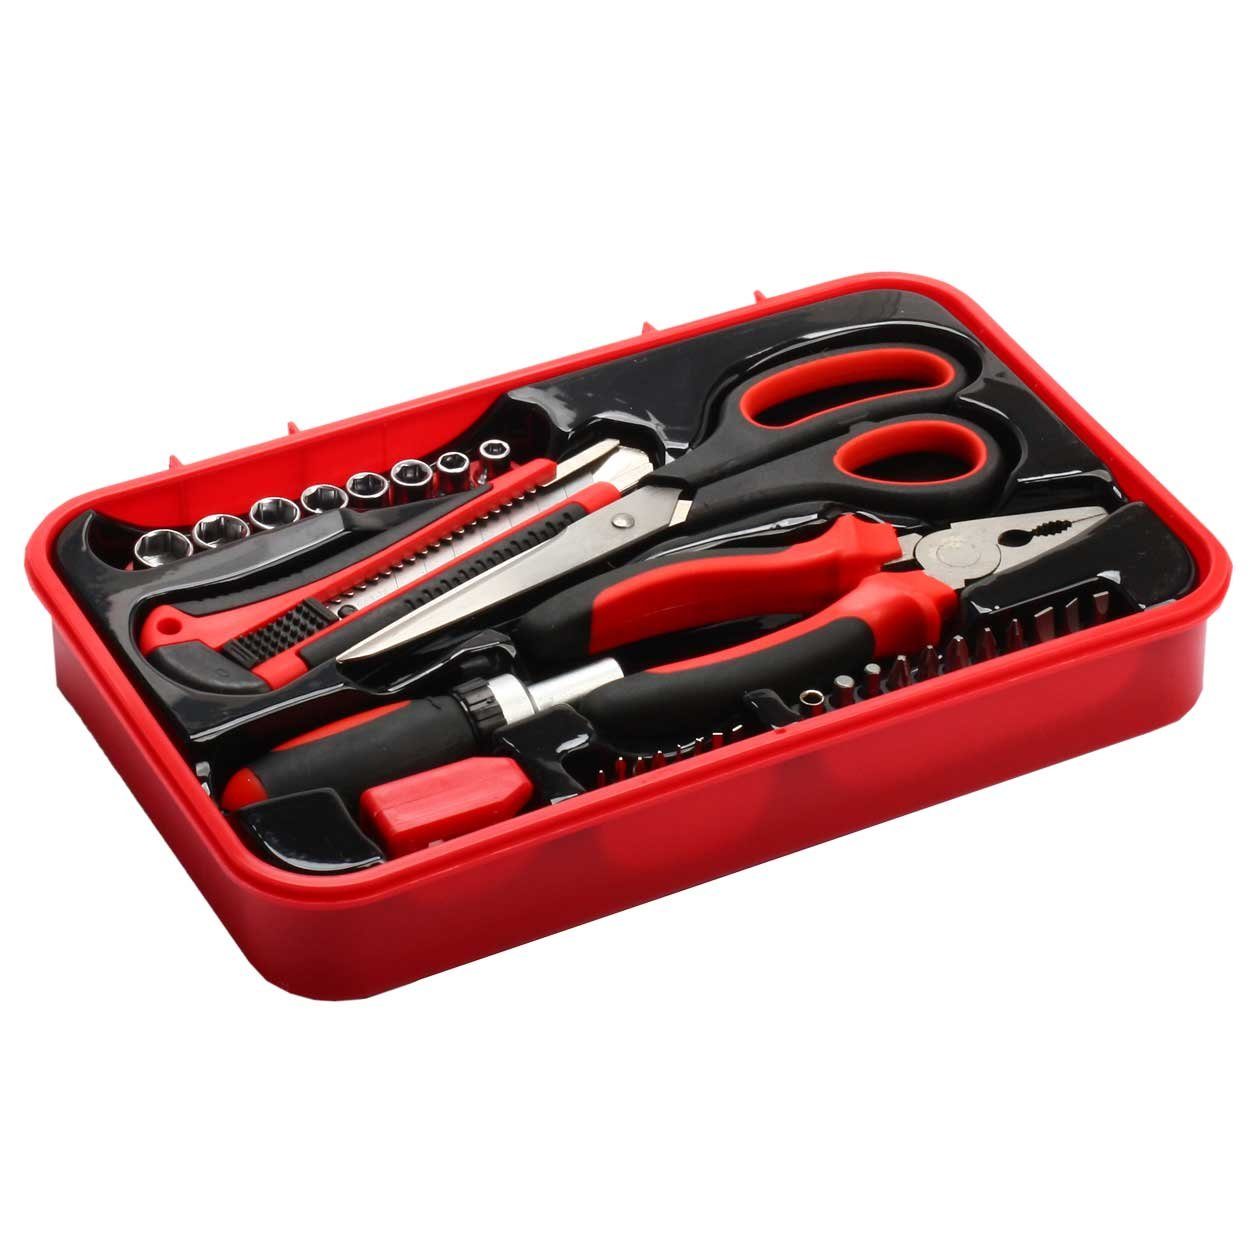 32-teilig Handwerkzeug Box Werkzeugsatz Werkzeugkoffer security Set TS-32 SCHMIDT tools Werkzeugset